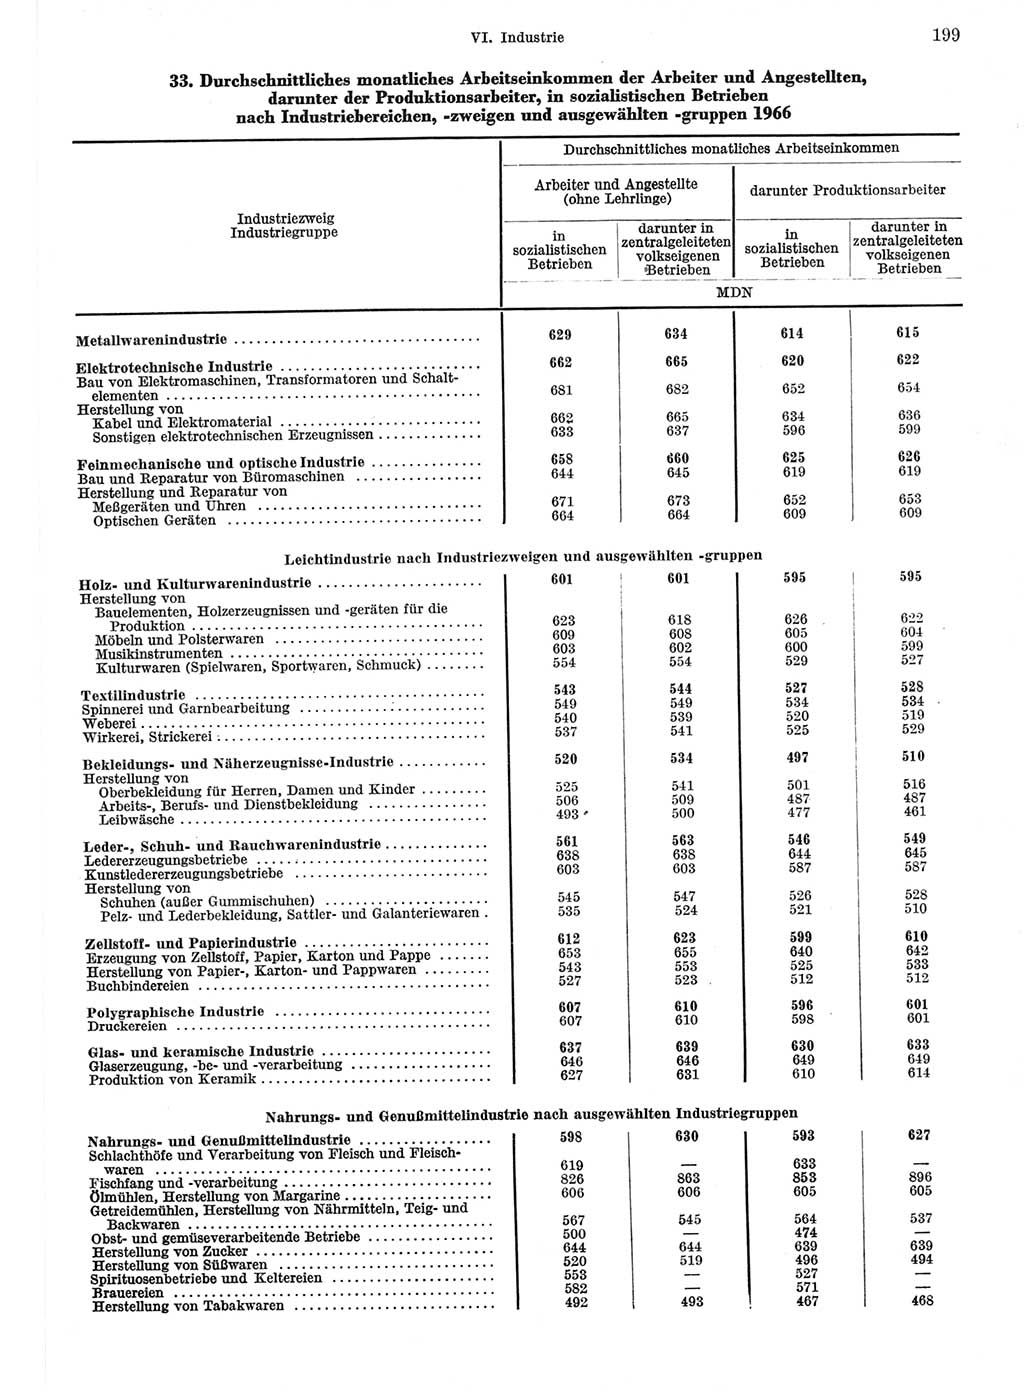 Statistisches Jahrbuch der Deutschen Demokratischen Republik (DDR) 1967, Seite 199 (Stat. Jb. DDR 1967, S. 199)